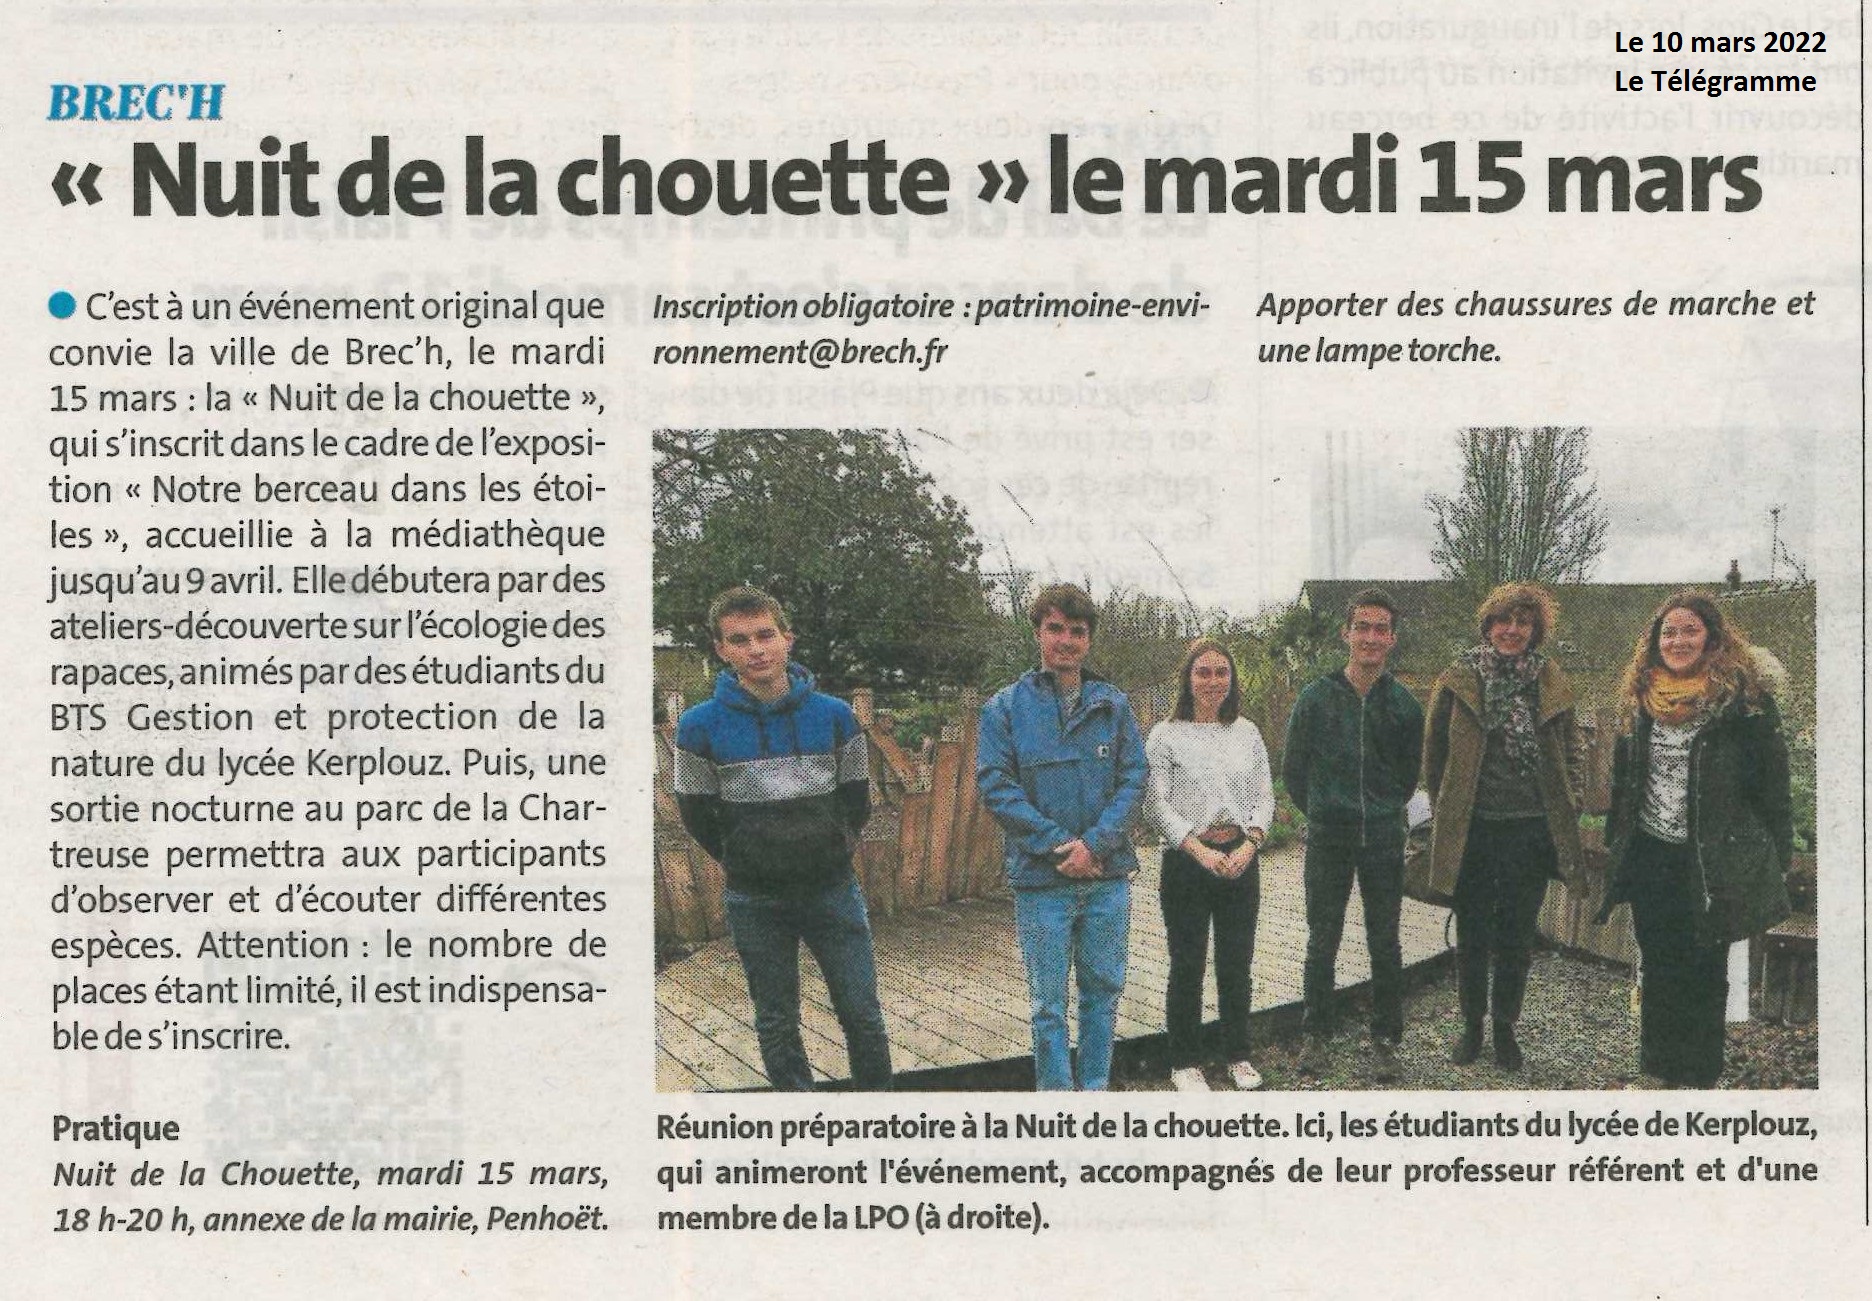 « Nuit de la chouette » le mardi 15 mars (1 article Ouest-France + 1 article Le Télégramme)